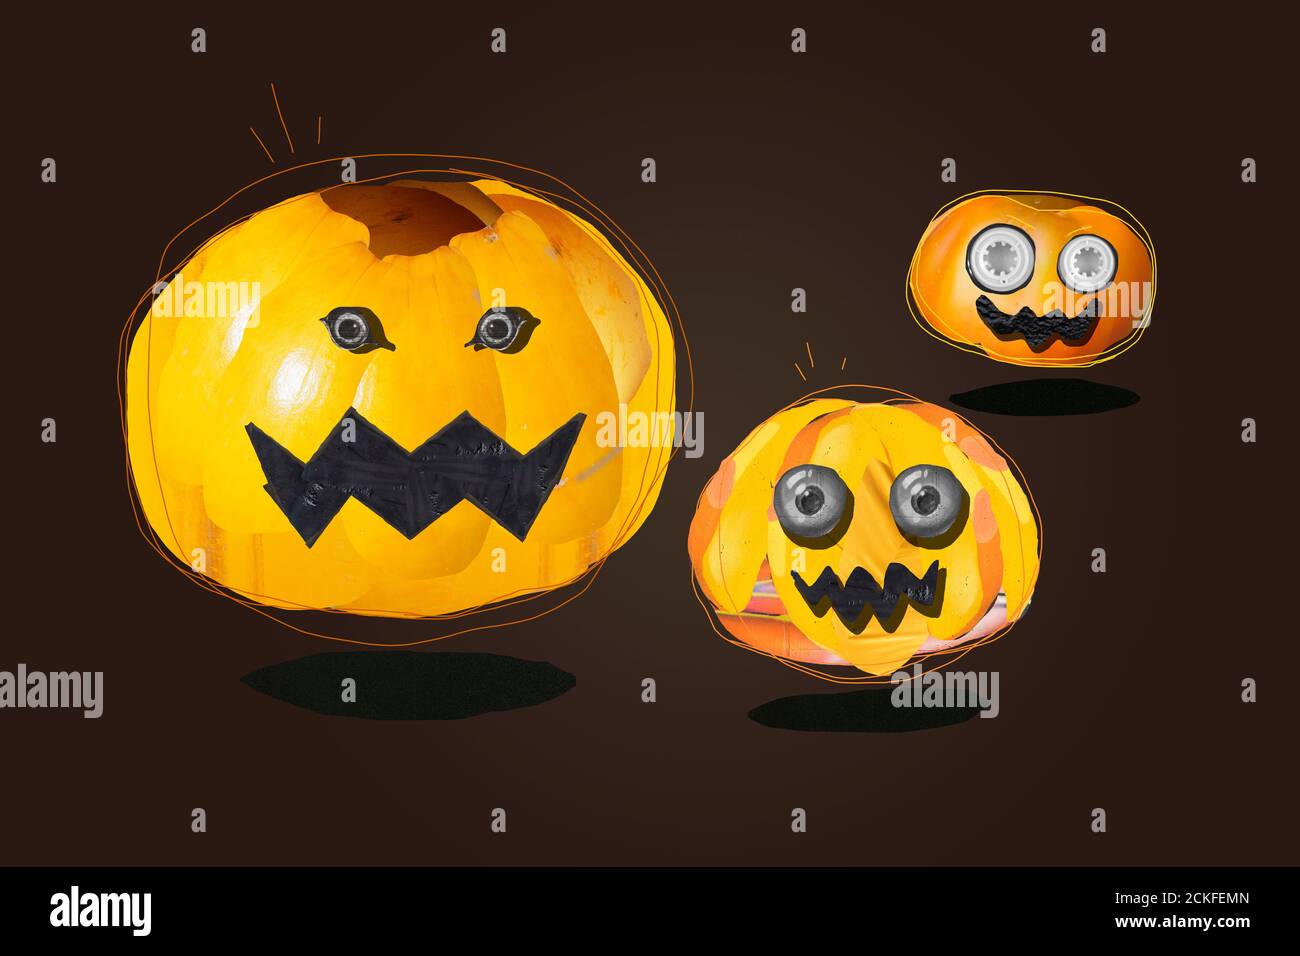 Lustige und erschreckende Halloween Kürbisse, erstellt mit der fotografischen Collage-Technik, können mit dem Vektor-Strich im Bild enthalten ausgeschnitten werden. Stockfoto